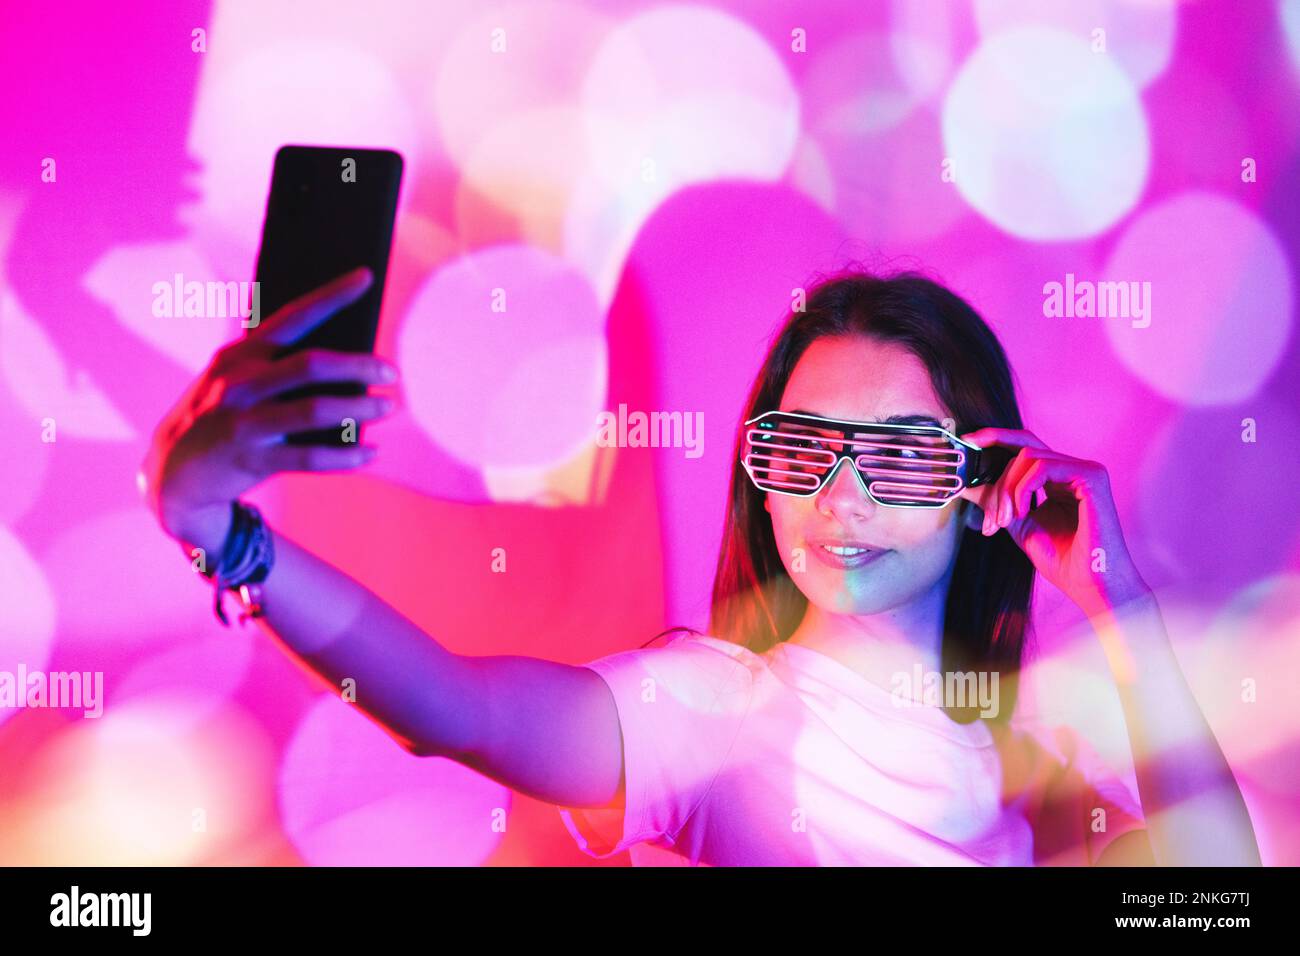 Jeune femme avec des lunettes de fantaisie prenant selfie sur smartphone dans des lumières néon roses Banque D'Images